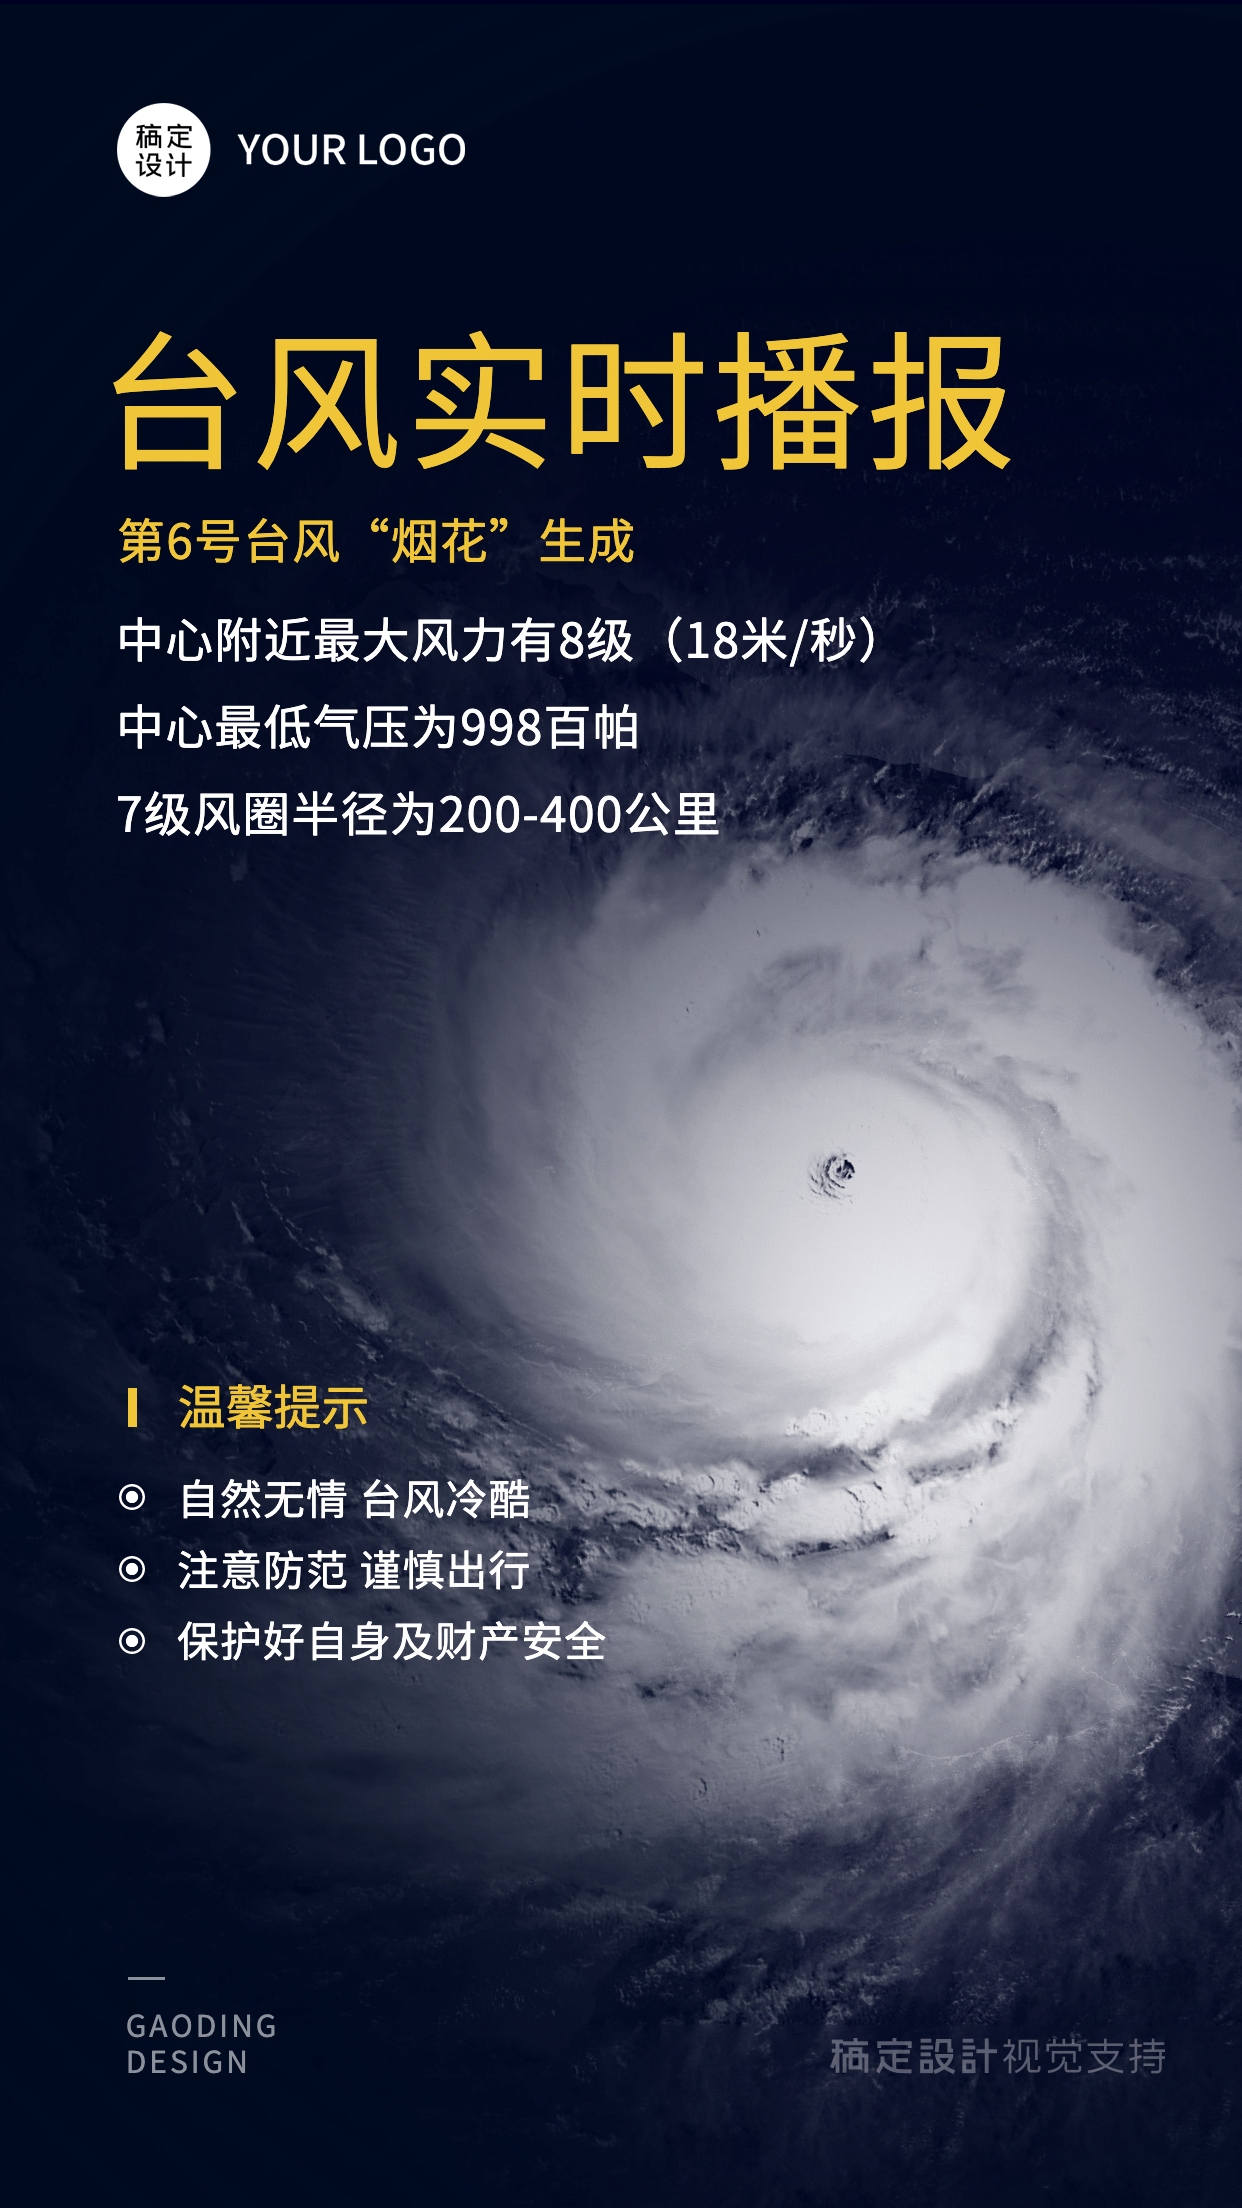 台风实时播报实务海报预览效果